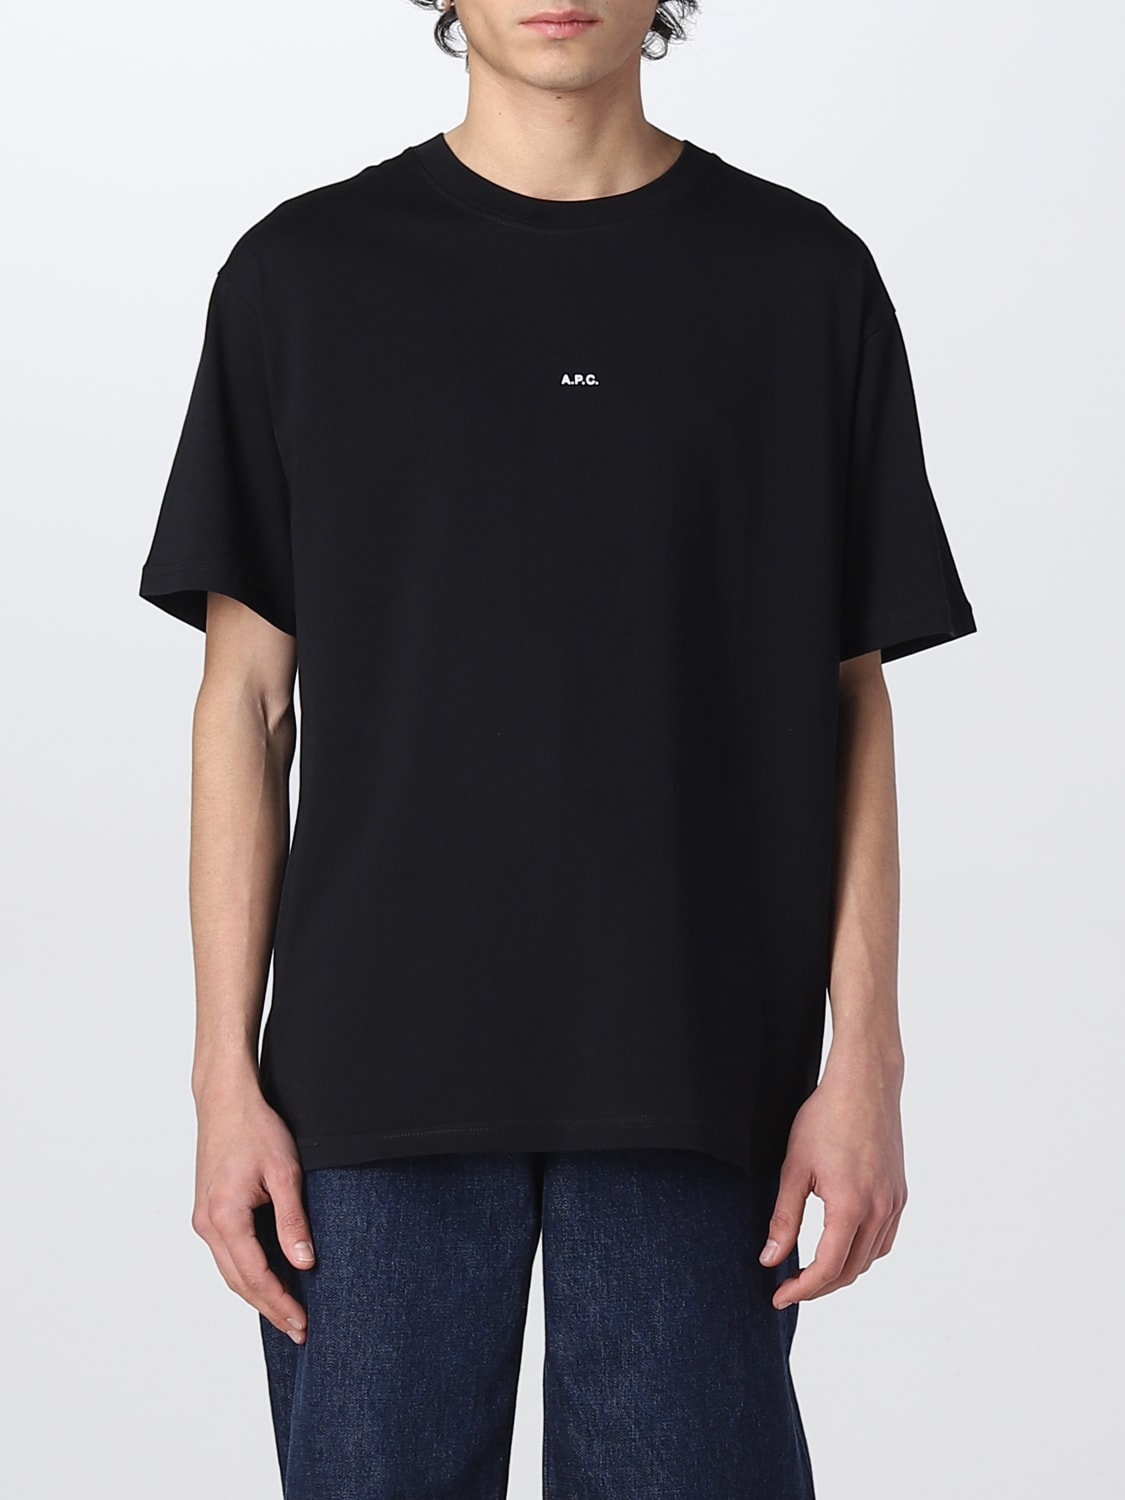 A.P.C.: t-shirt for man - Black | A.p.c. t-shirt COEIOH26929